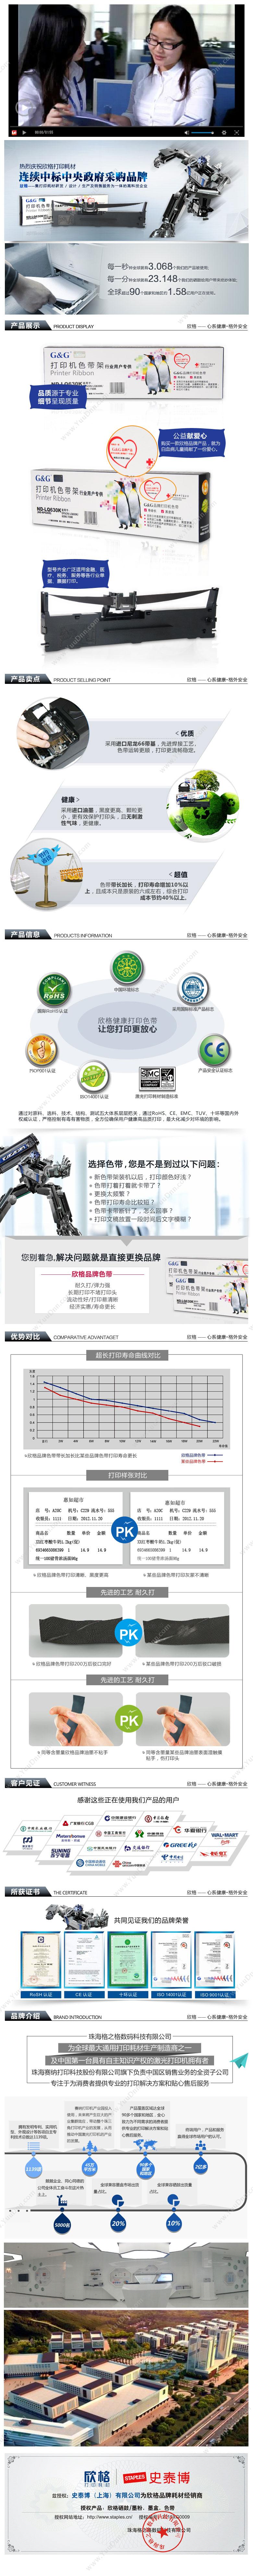 欣格 Xinge RA-5560 色带芯（黑）（适用 5560/6500/6500F/5560SC/5960） 兼容色带芯